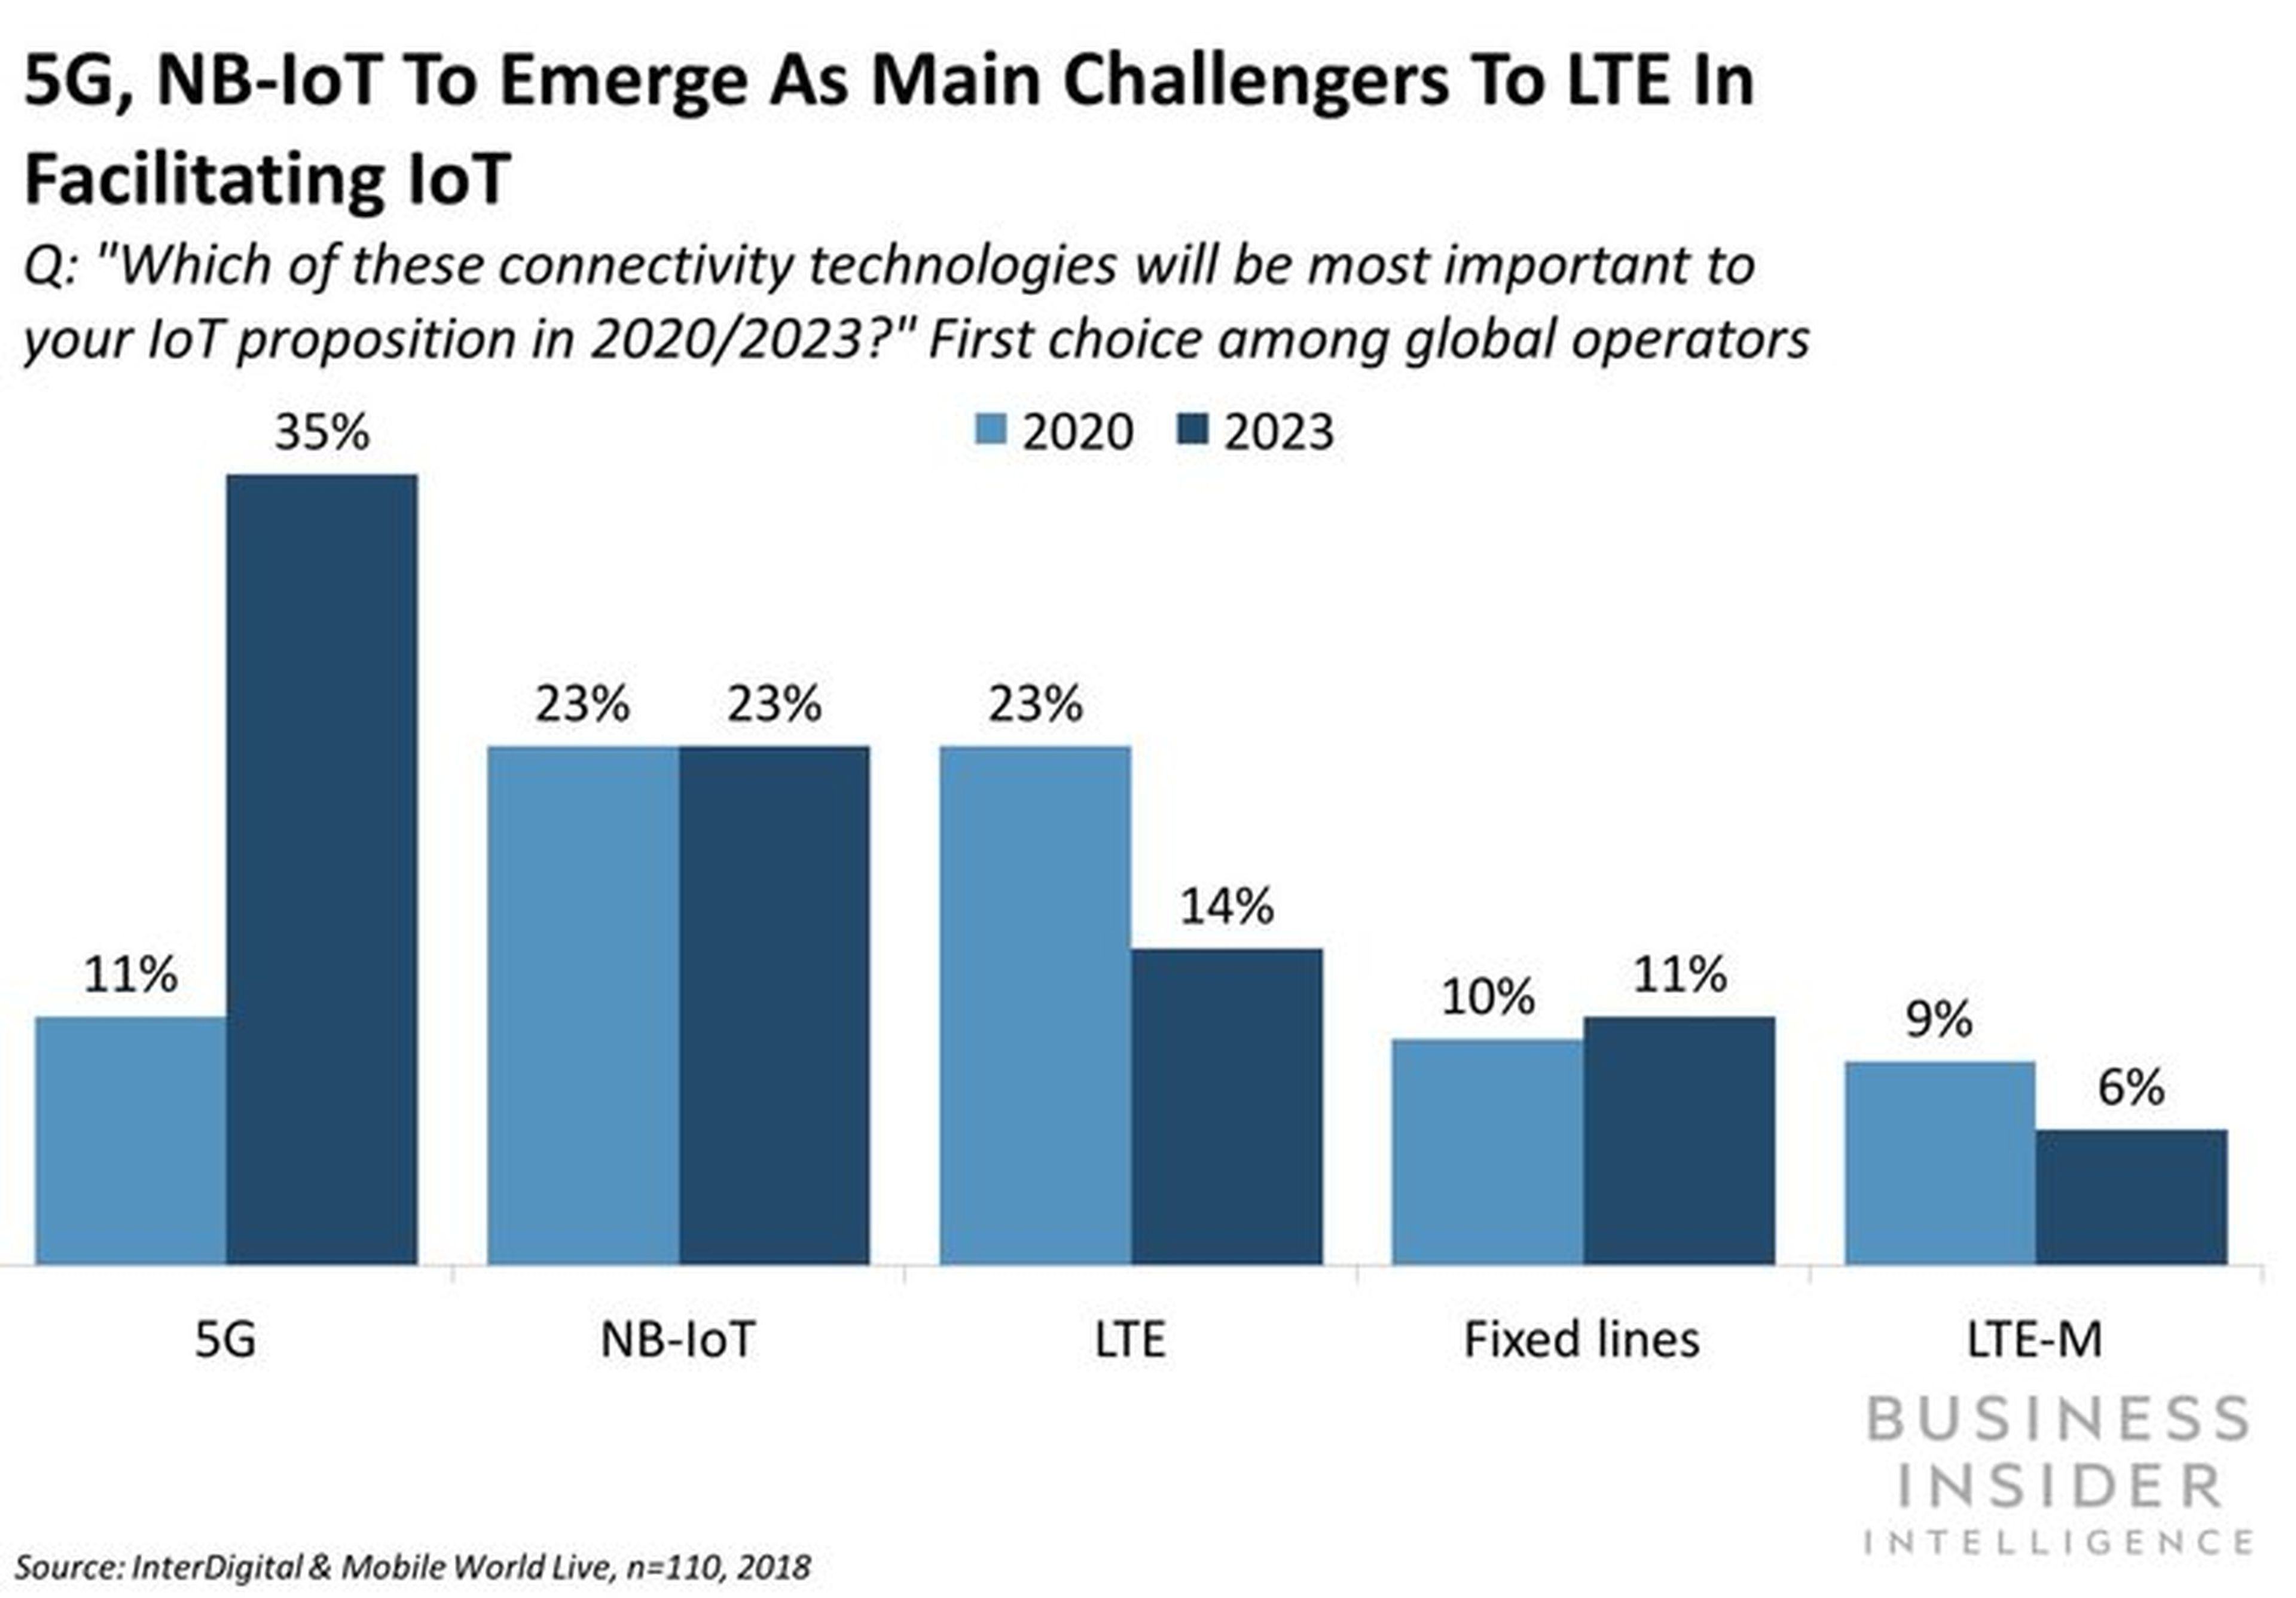 Pregunta: ¿Cuál de estas tecnologías de conectividad será más importante para tu negocio IoT entre 2020 y 2023?